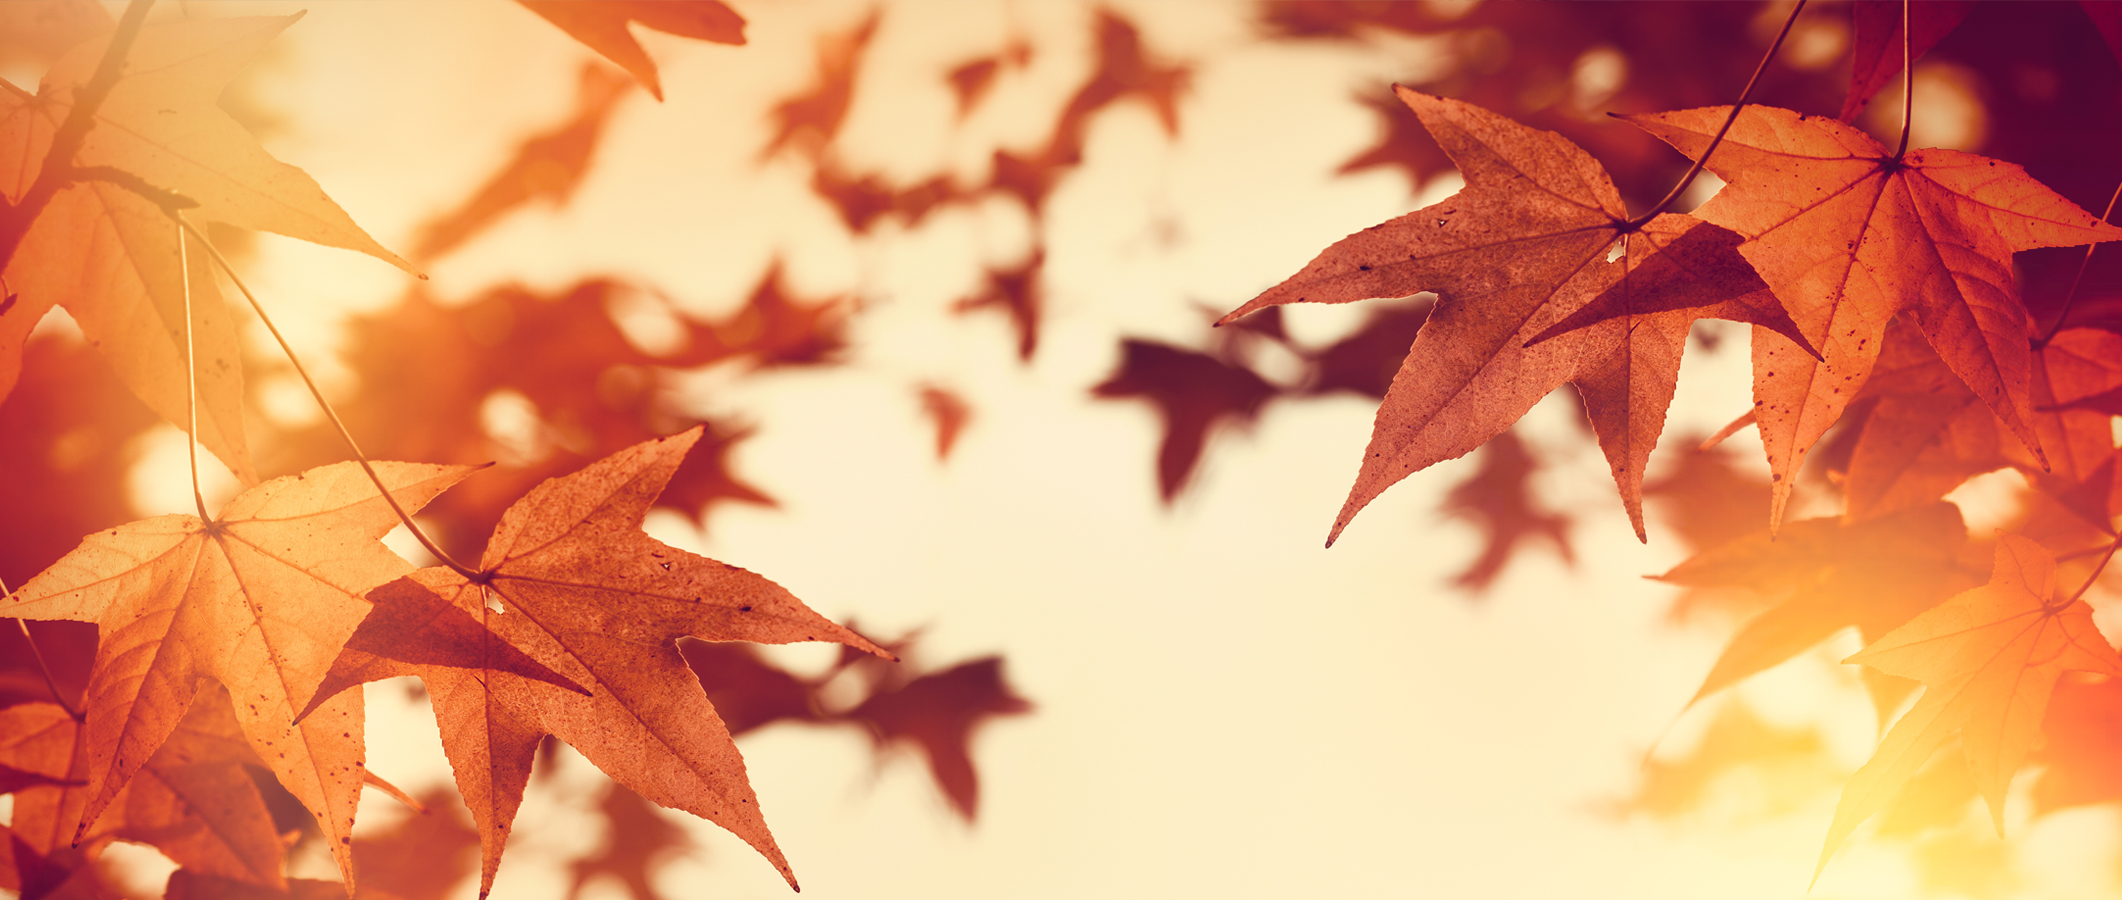 Photographie de feuilles d'automne traversées par des jets de lumière